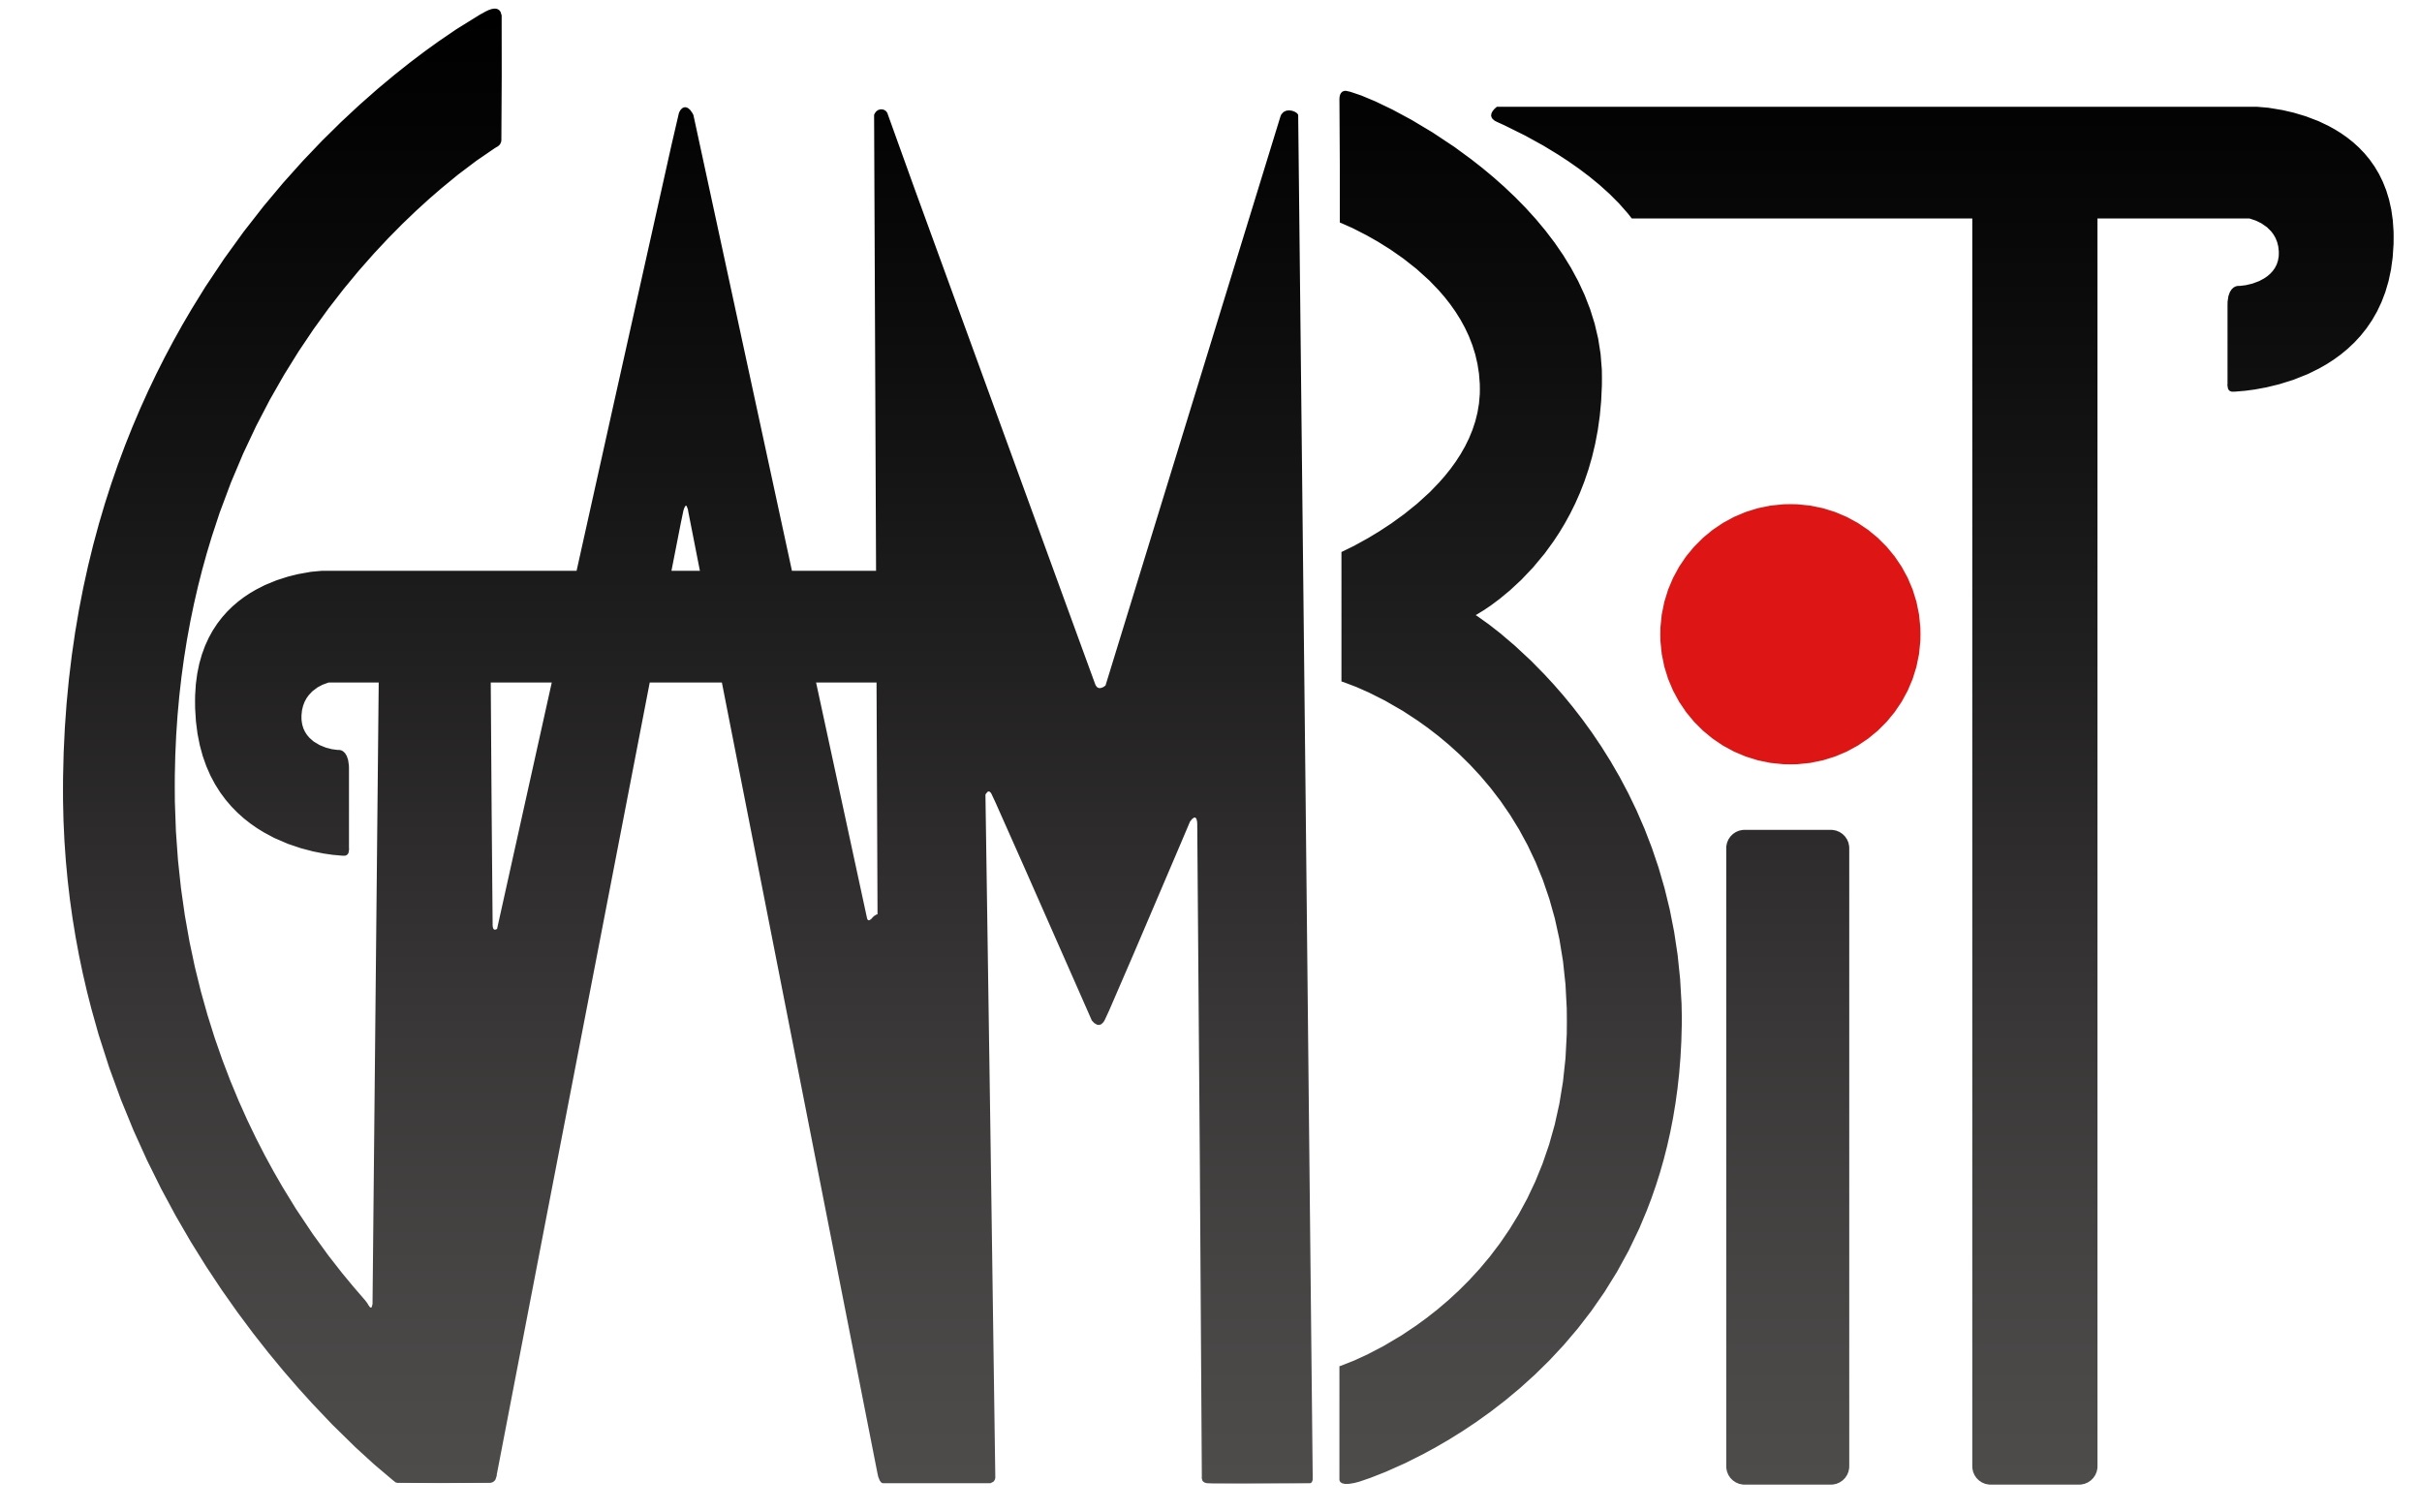 GAMBIT Logo.jpg f5474b98f5ac655dcdf8bbe17bbd585c